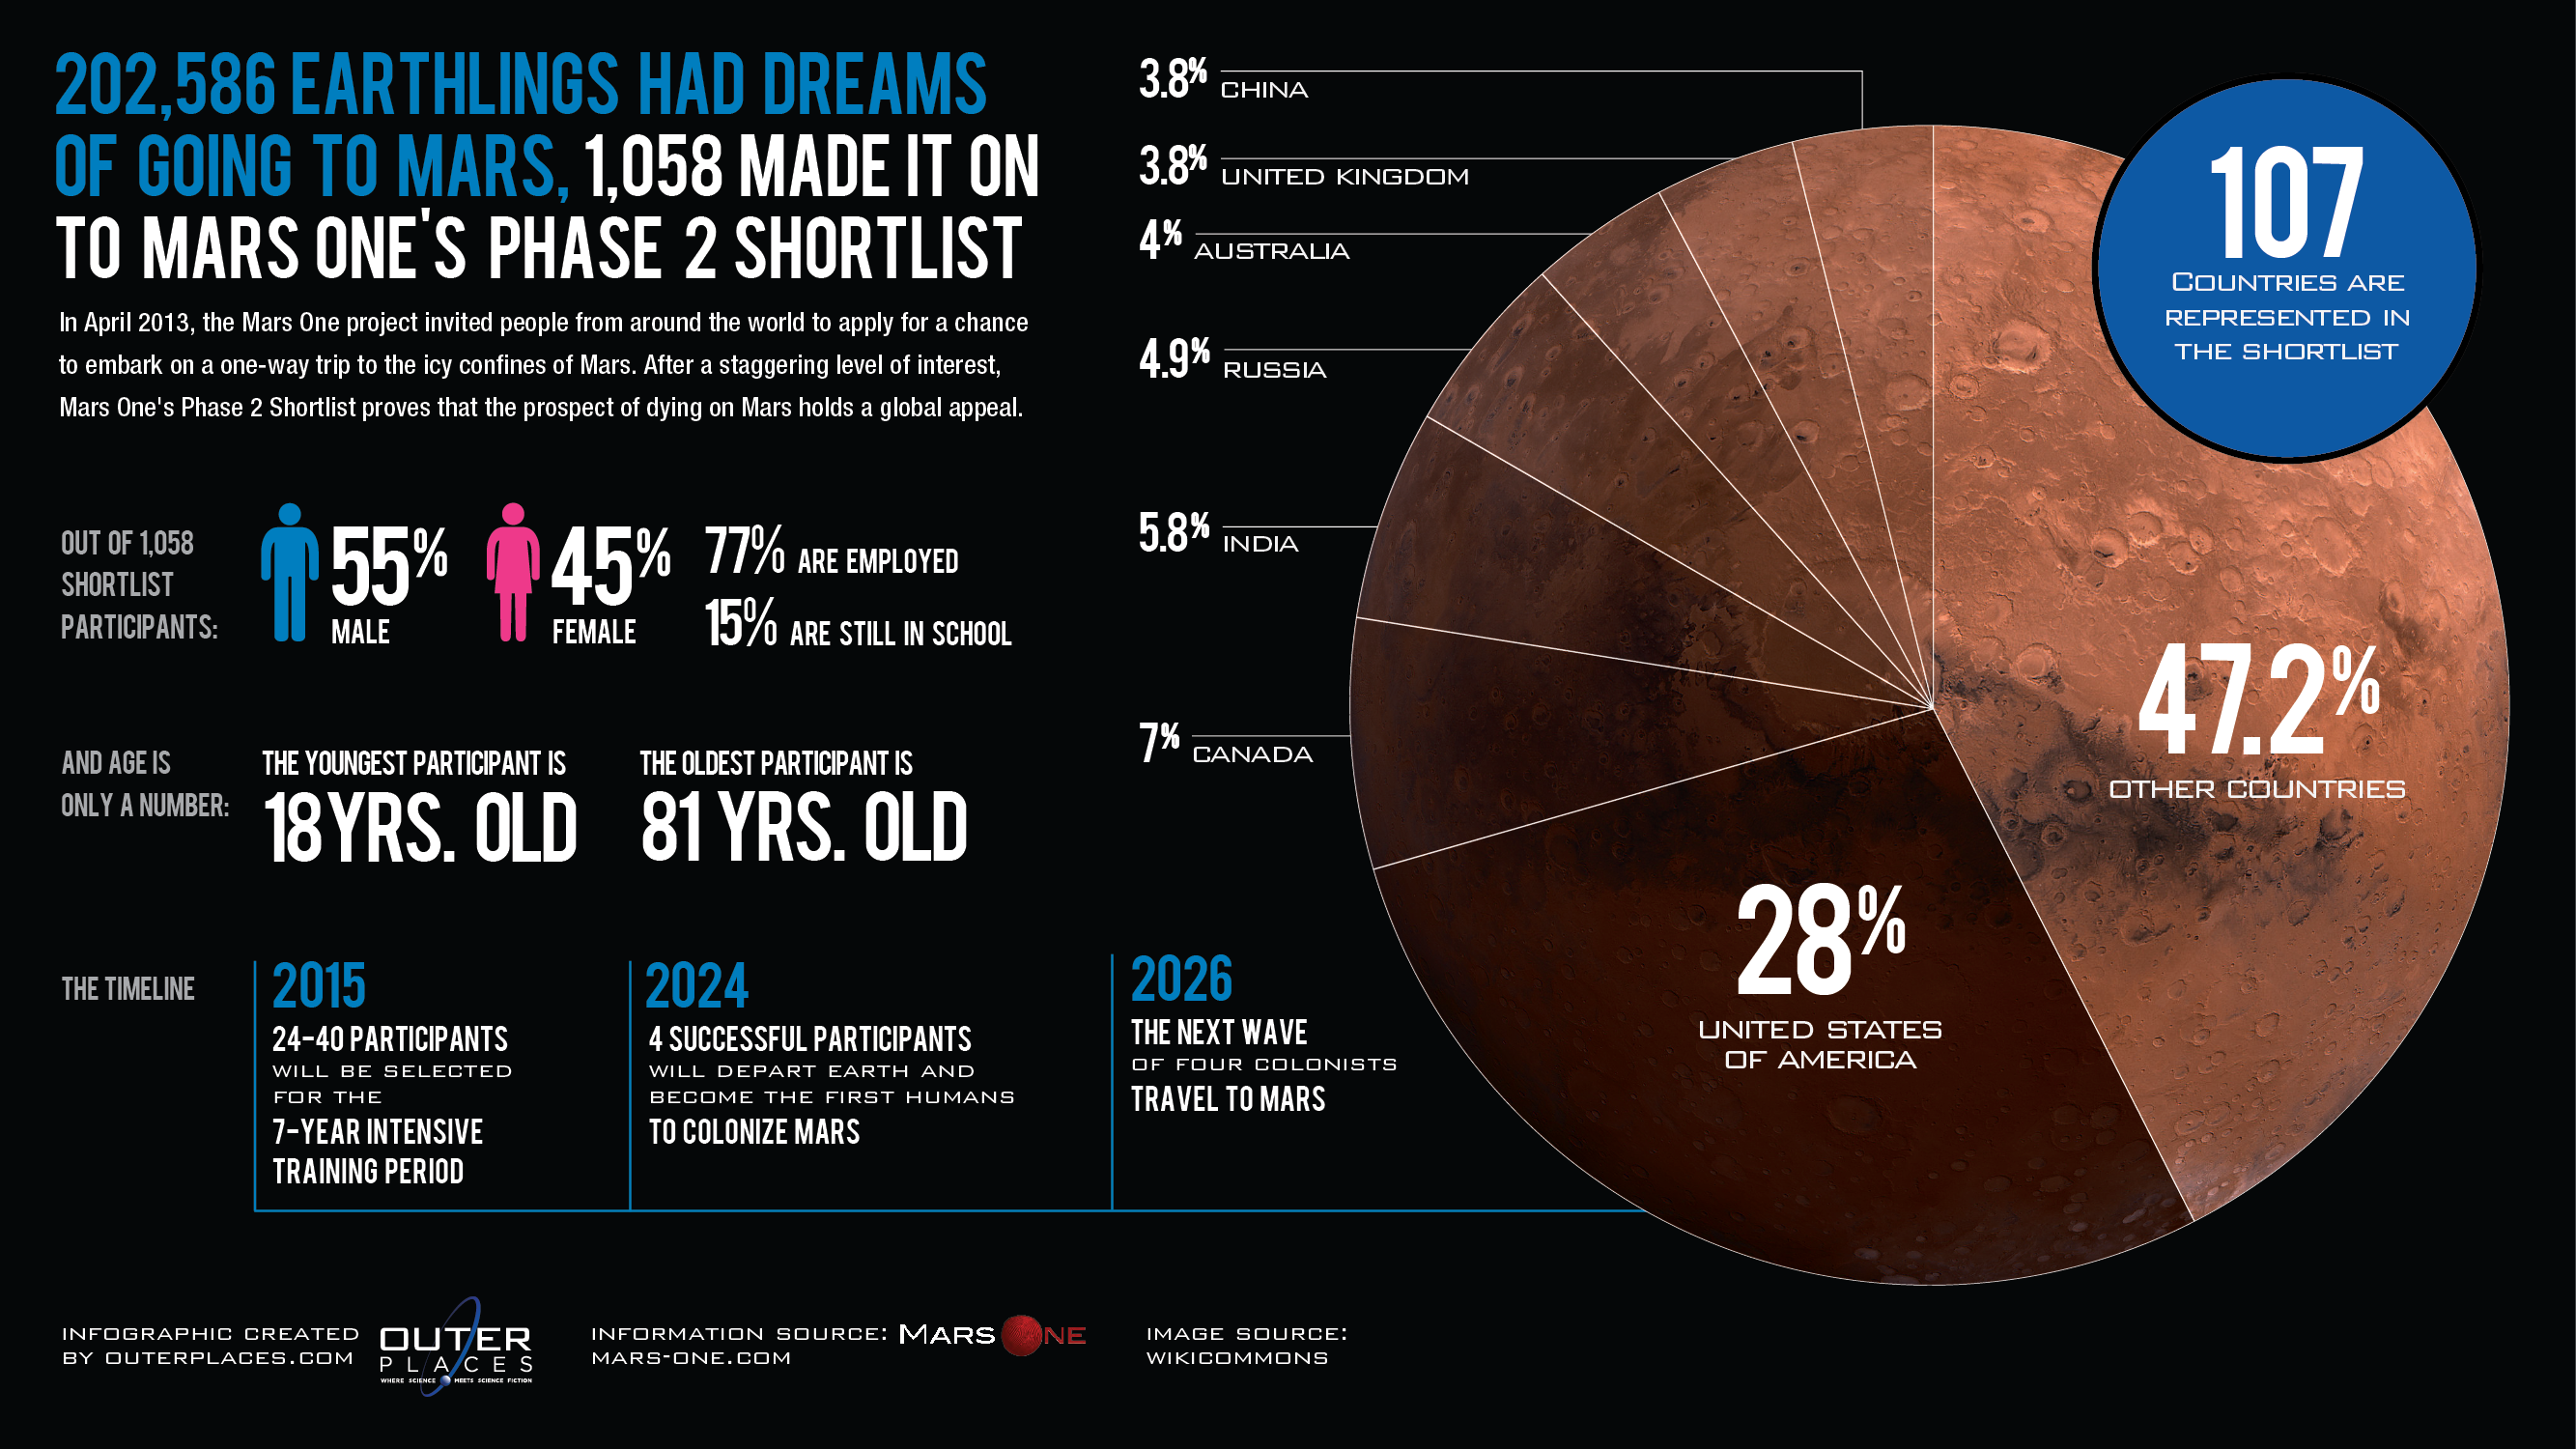 Код периода 2024. Марс one. Марс инфографика. Инфографика планеты Марс. Mars one инфографика.